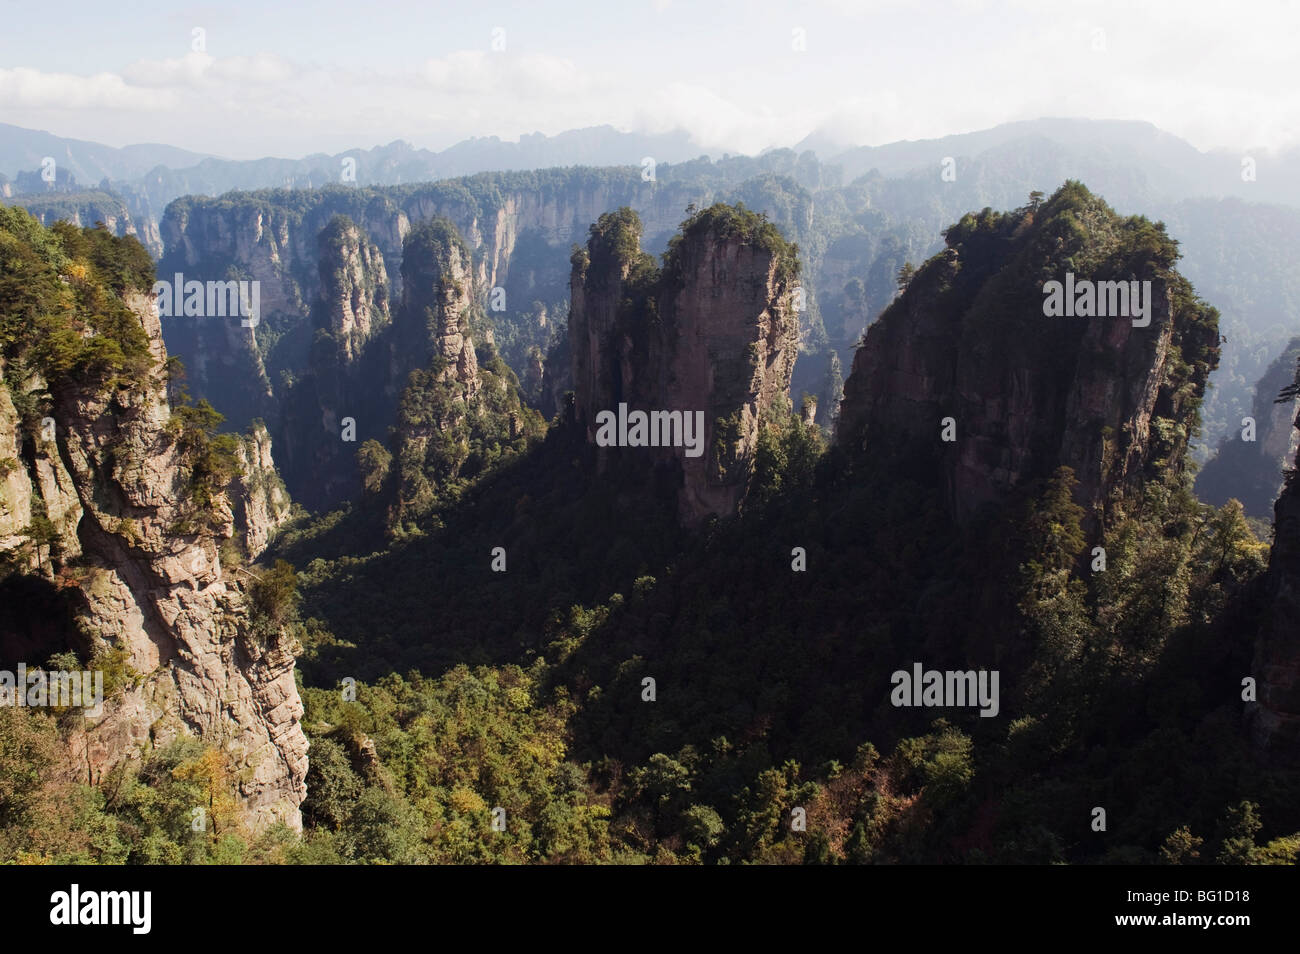 Karst formaciones de roca caliza en Forest Park, Wulingyuan Zhangjiajie Scenic Area, provincia de Hunan, China, Asia Foto de stock